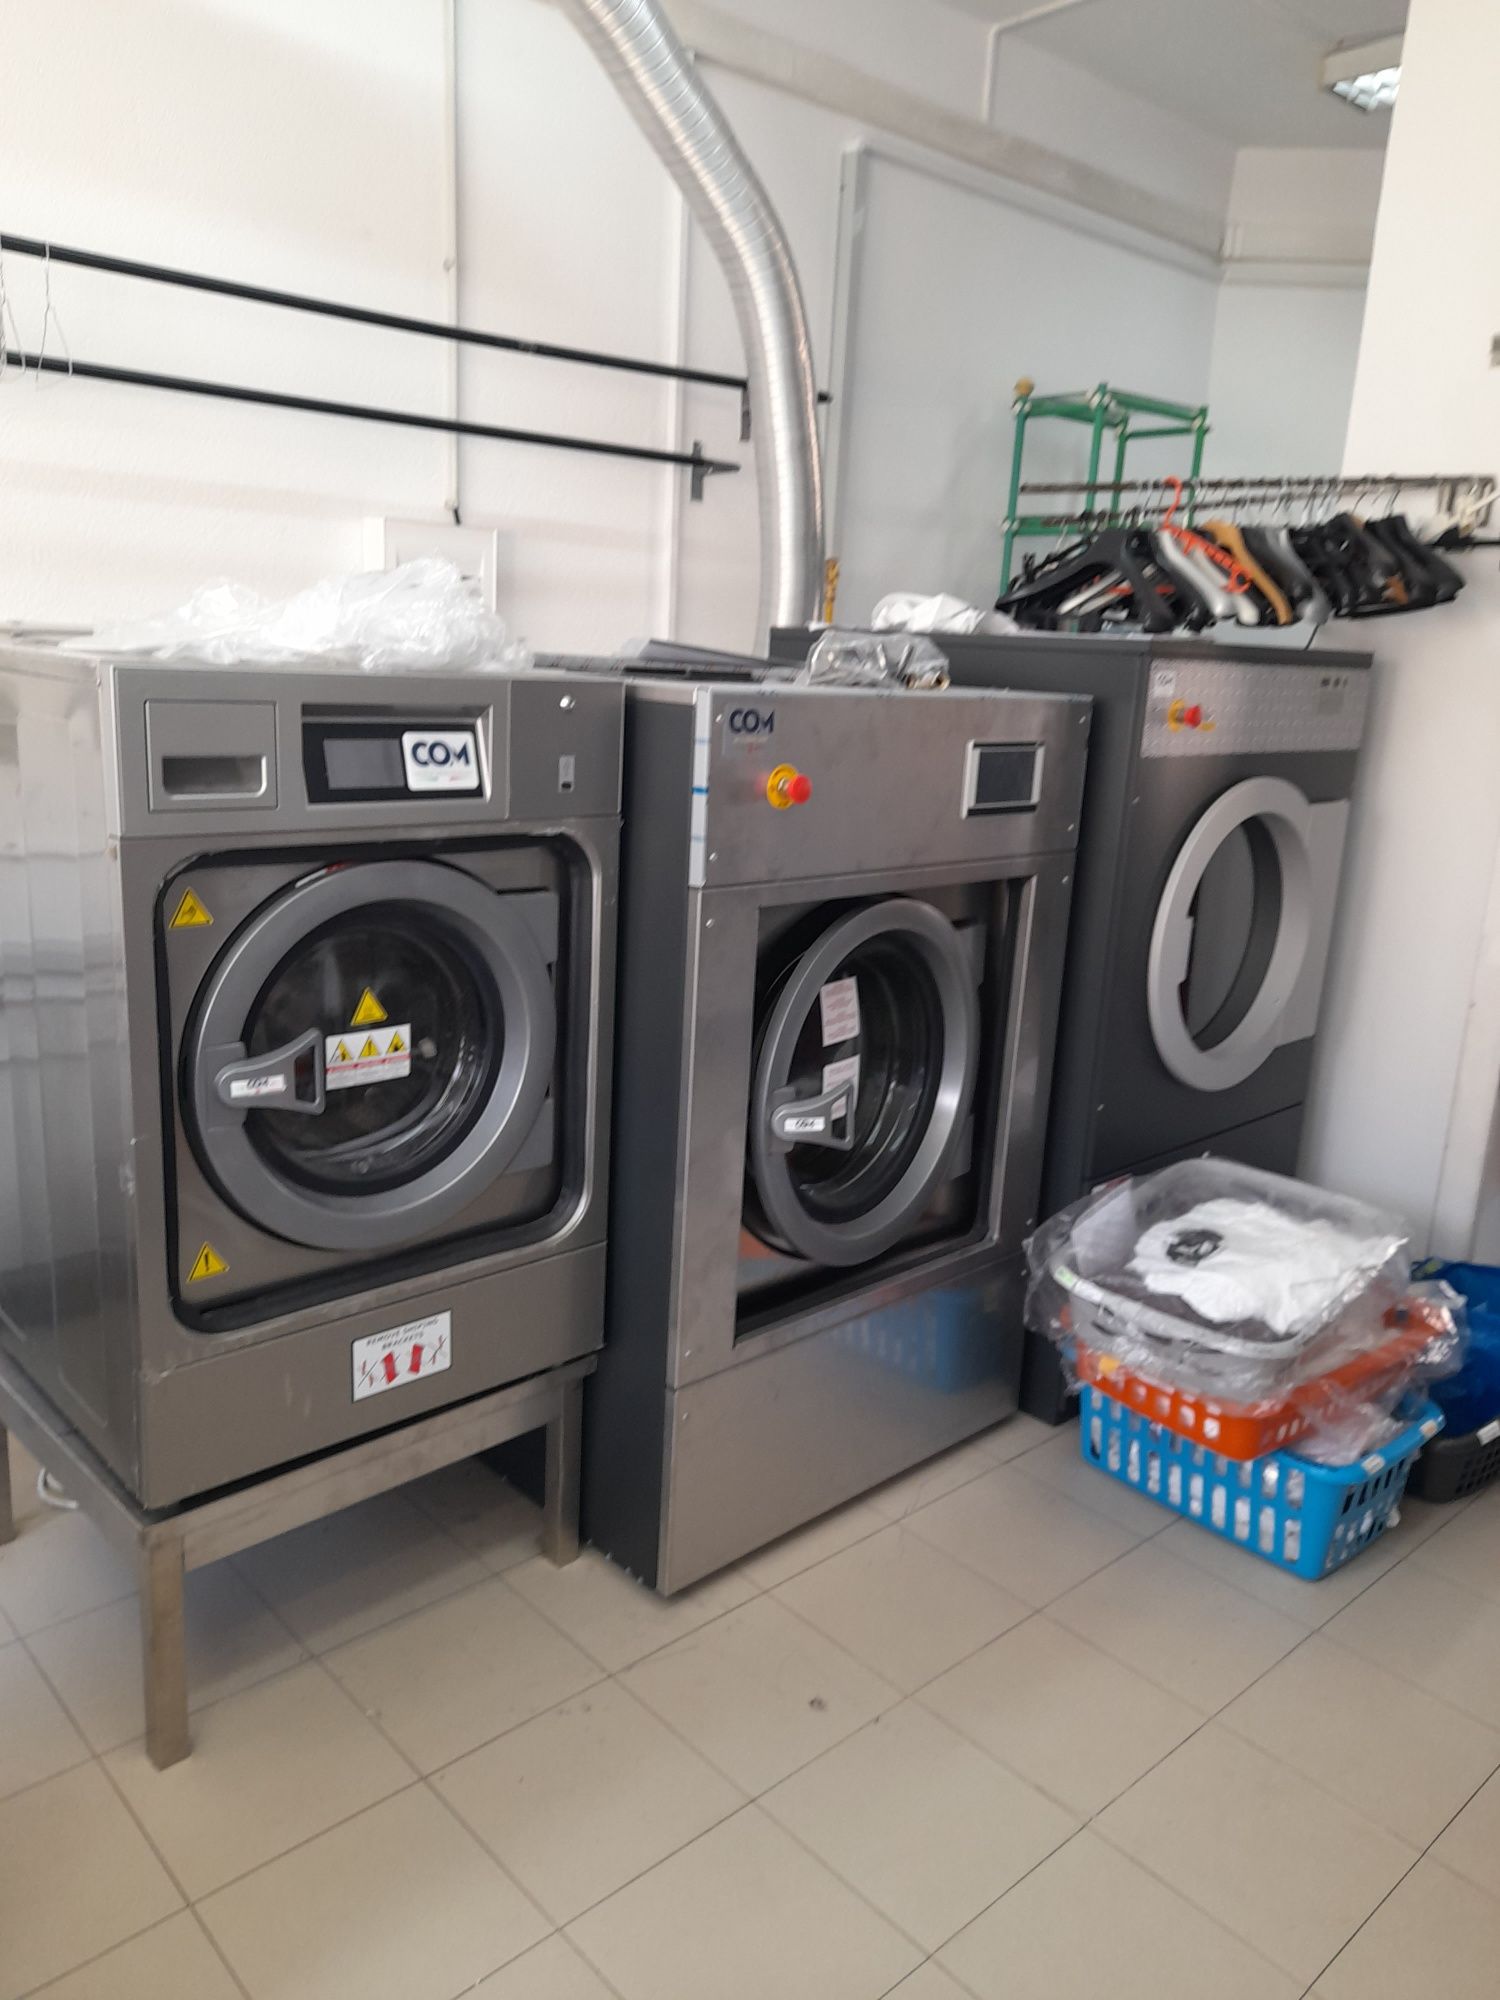 Miele / AGA lavandaria self service 30 dias